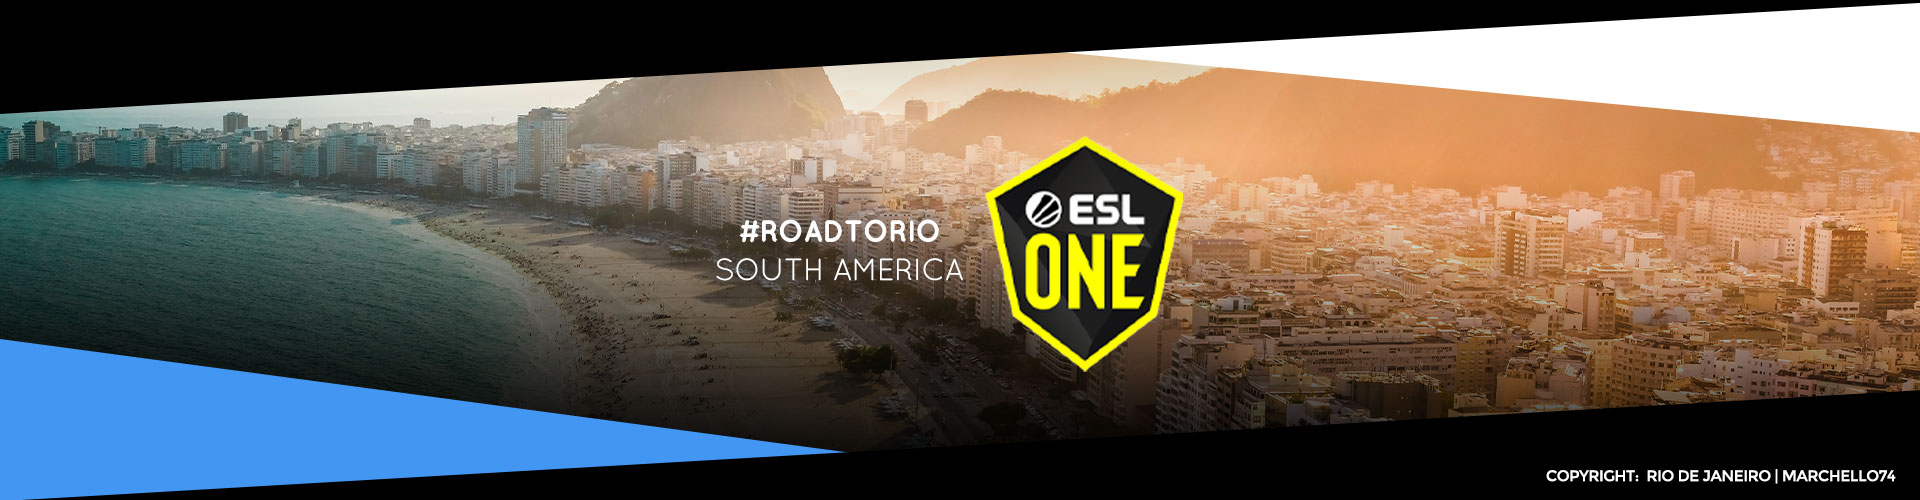 Eventsida för sydamerikanska ESL One: Road to Rio